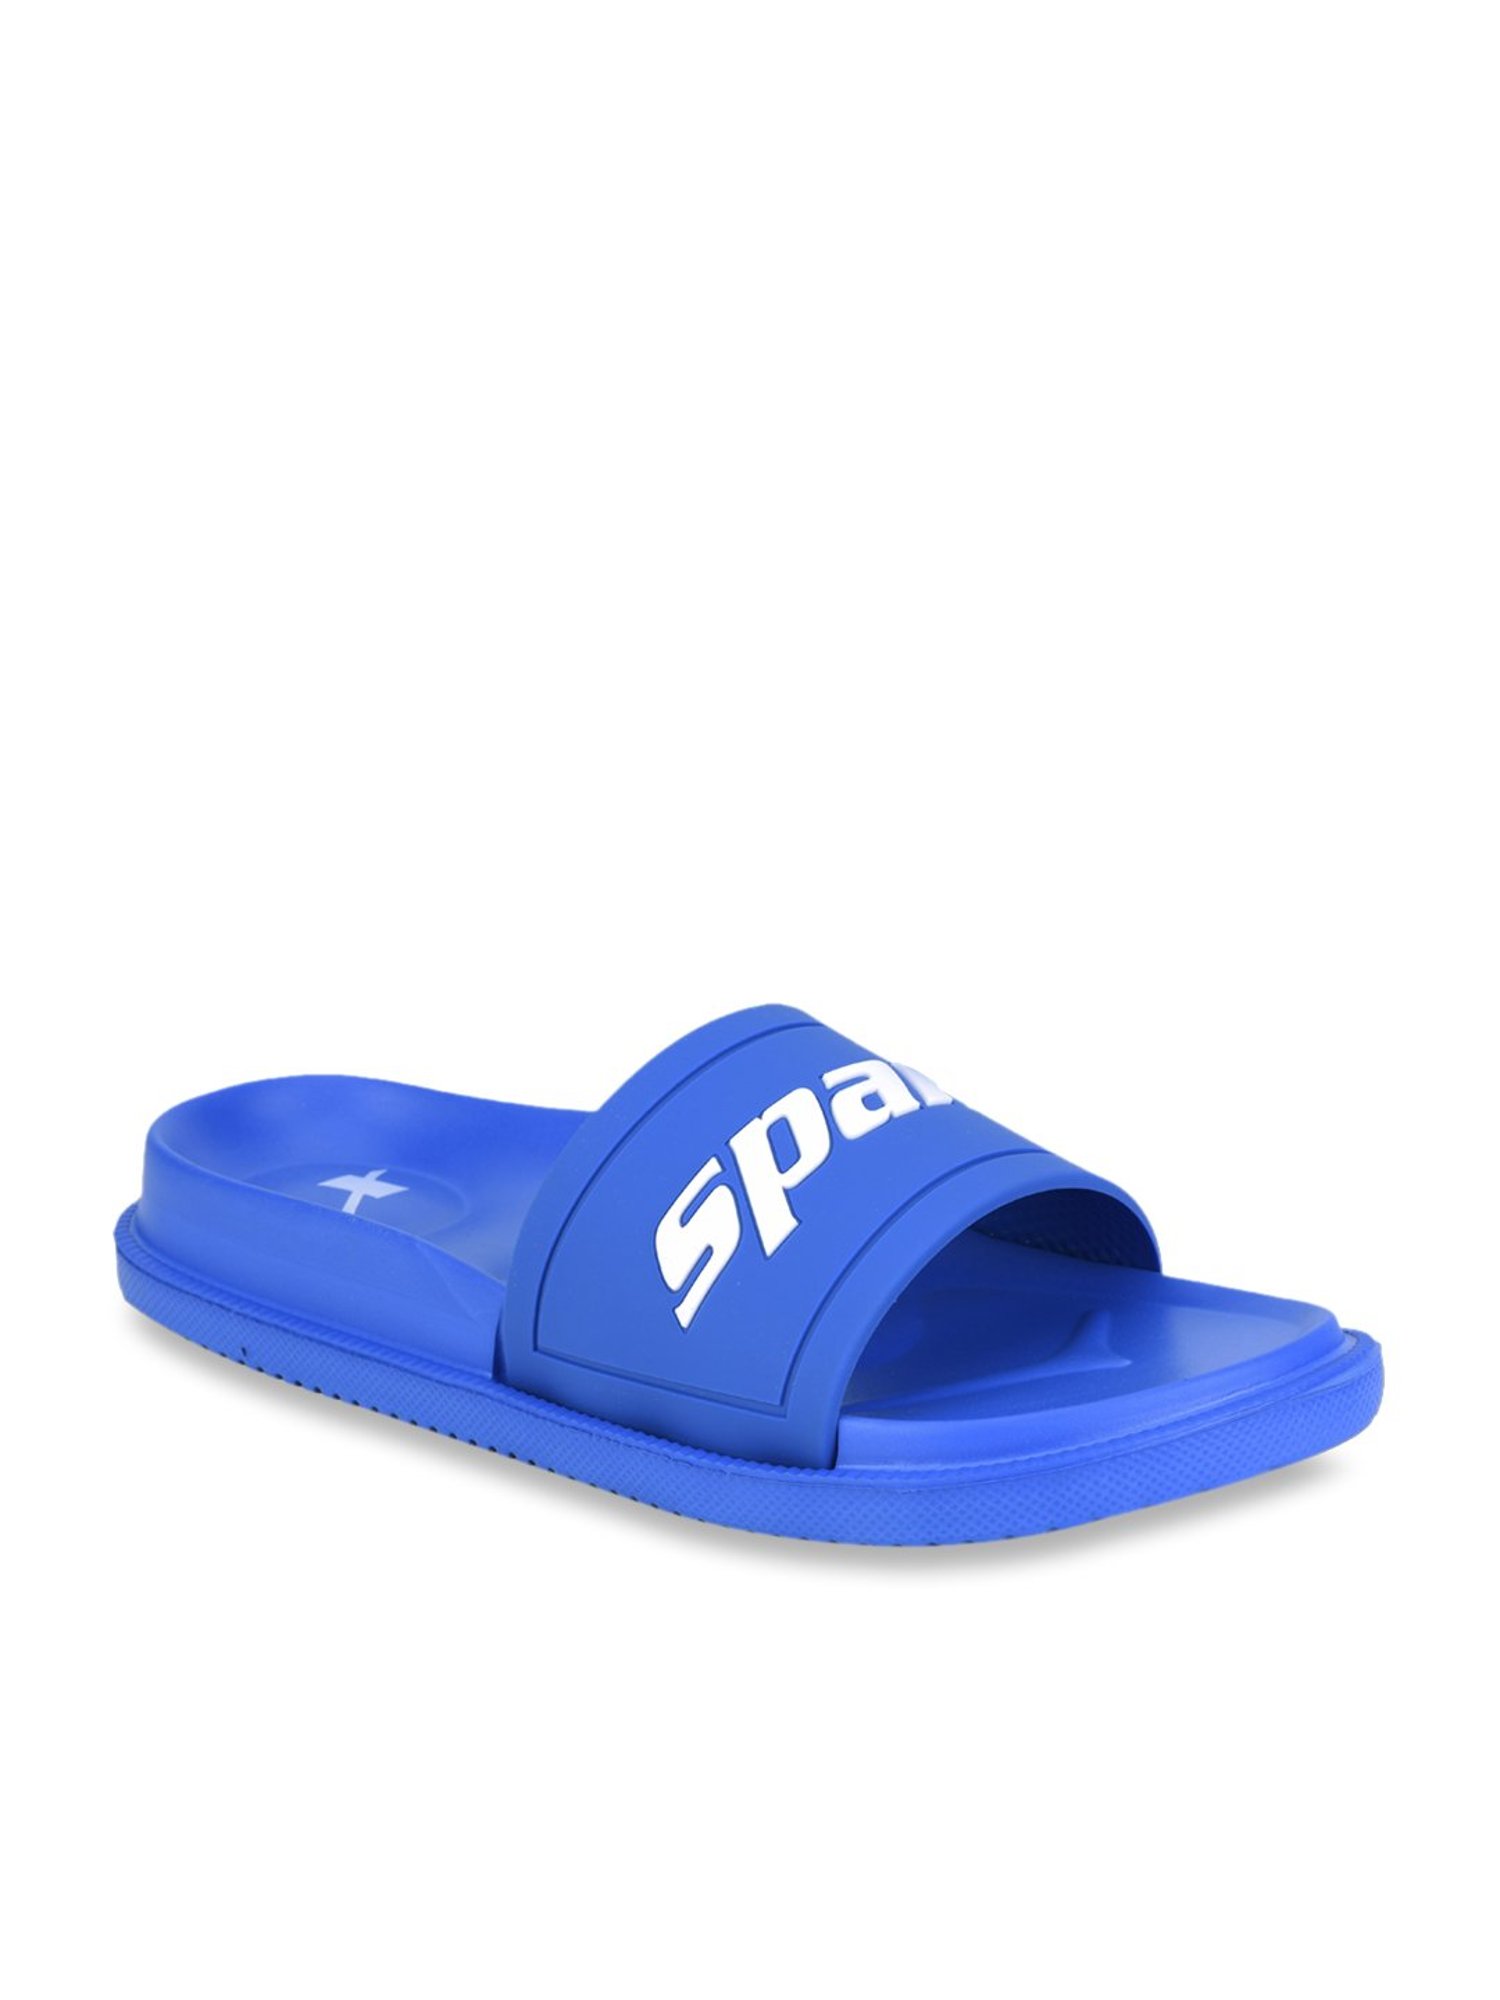 sparx slide flip flops